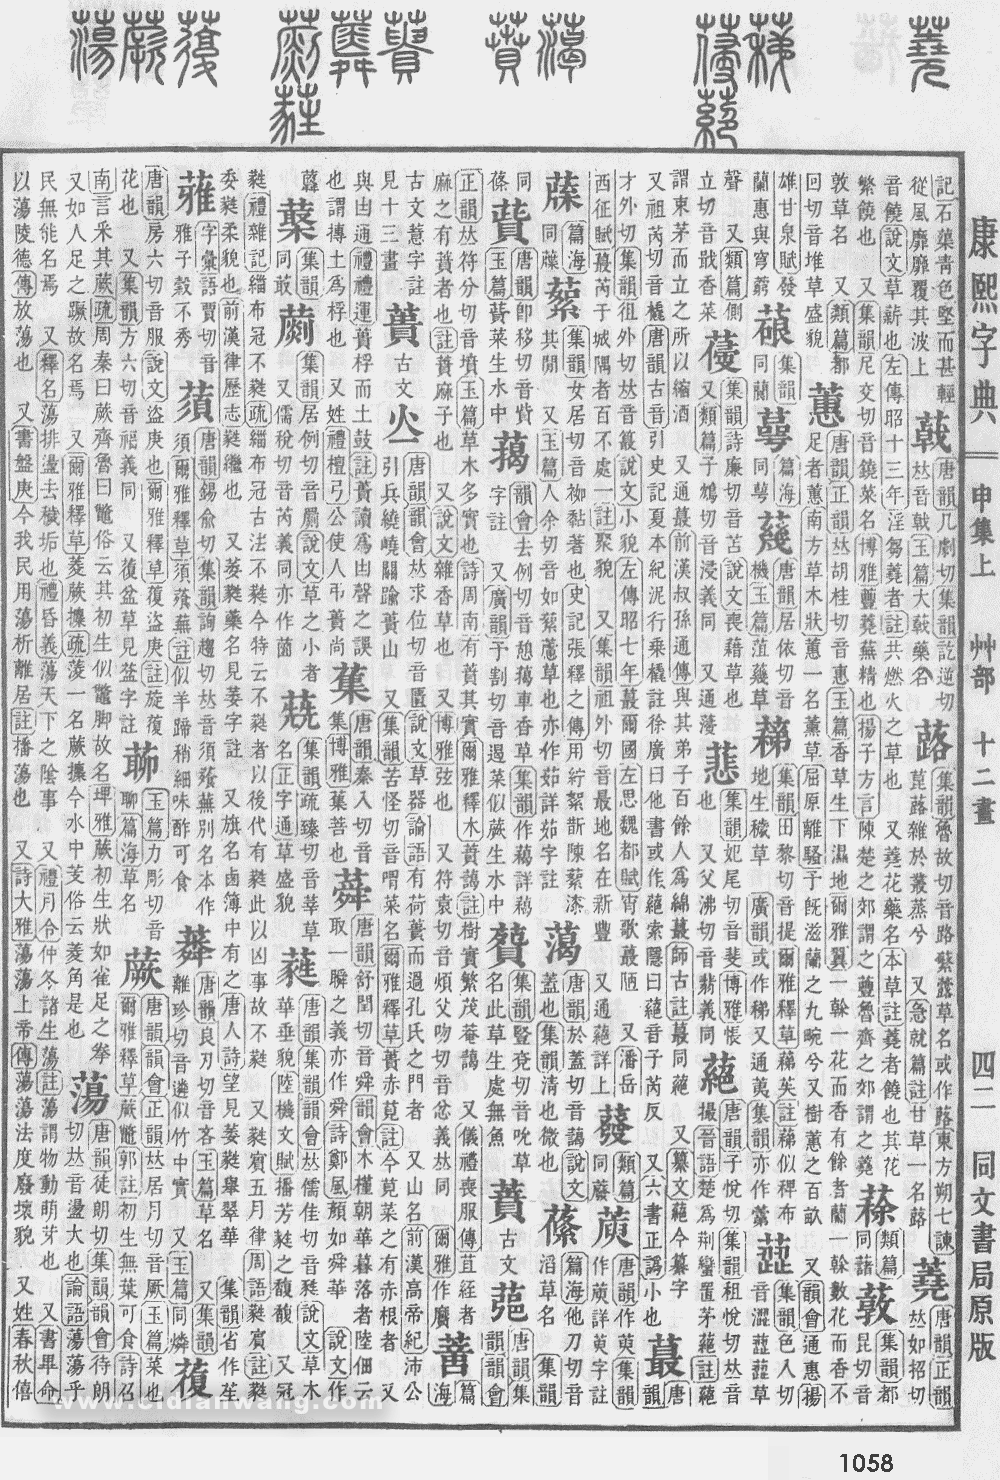 康熙字典掃描版第1058頁